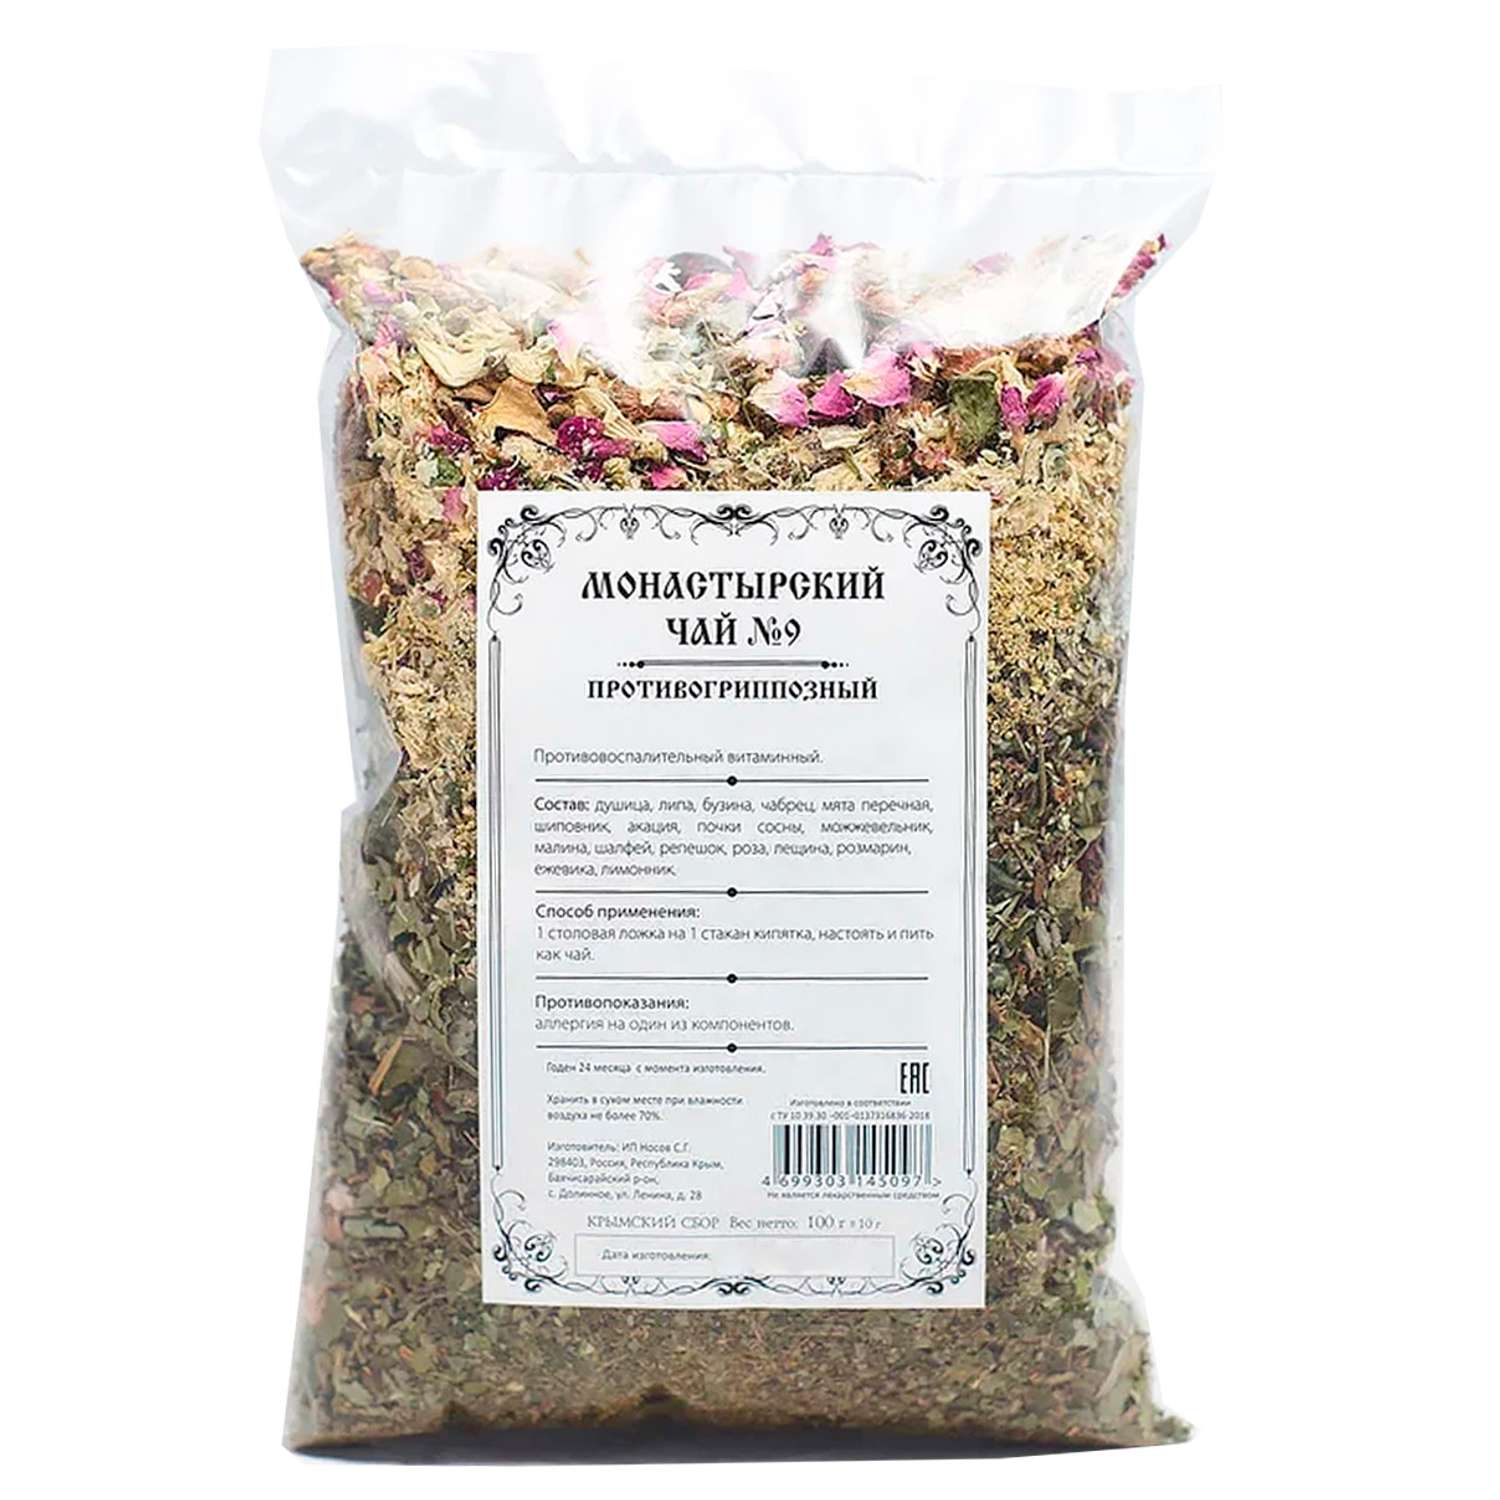 Чай Монастырские травы 9 Противогриппозный 100 гр. - фото 2